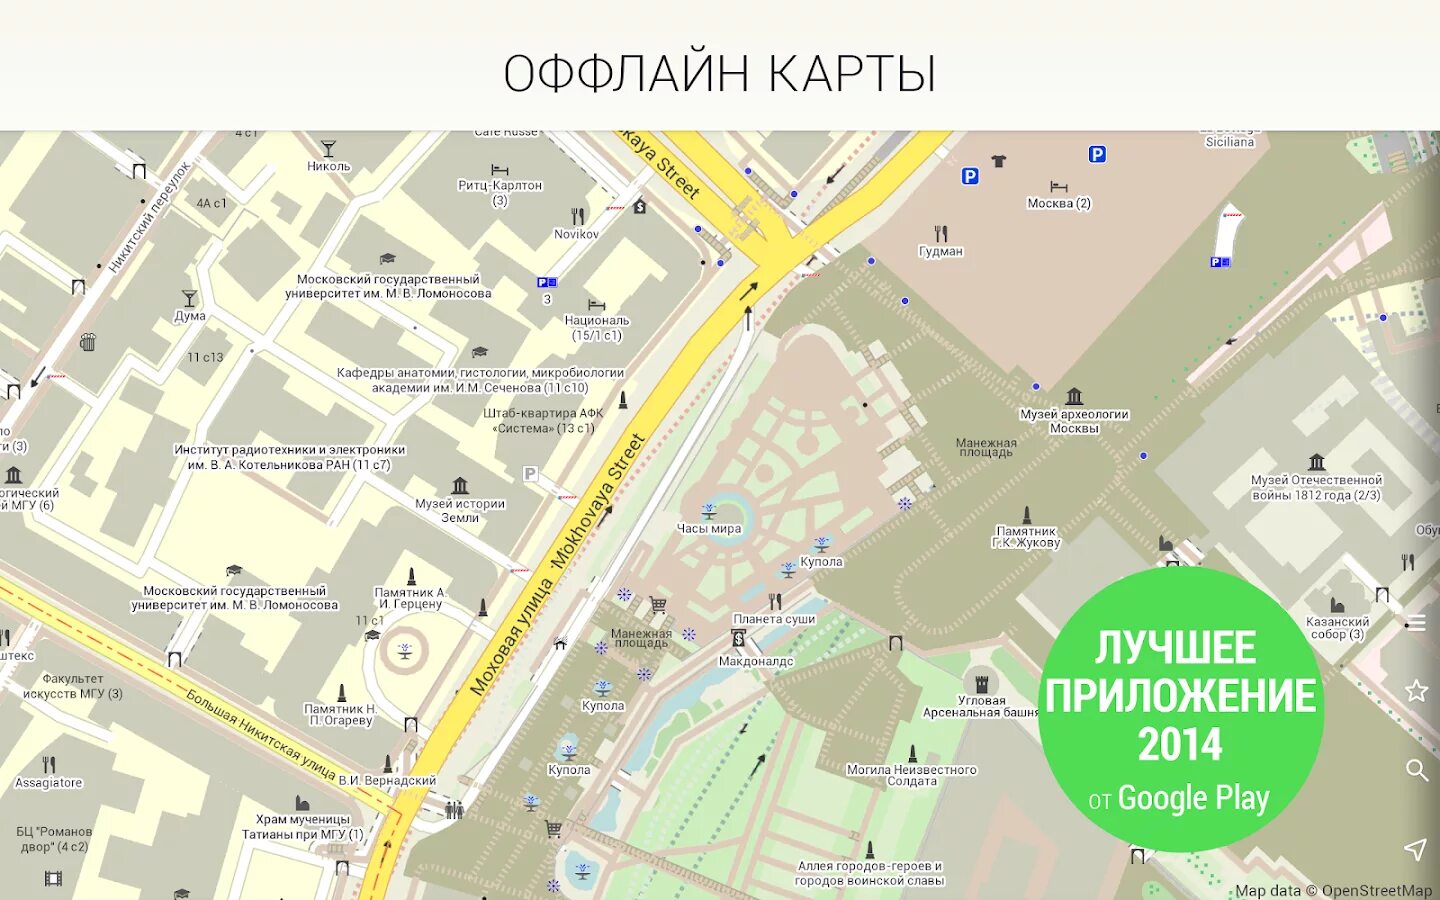 Оффлайн карты. Офлайн карта Москвы. Офлайн Мапс карты. Офлайн карта Артемовска.